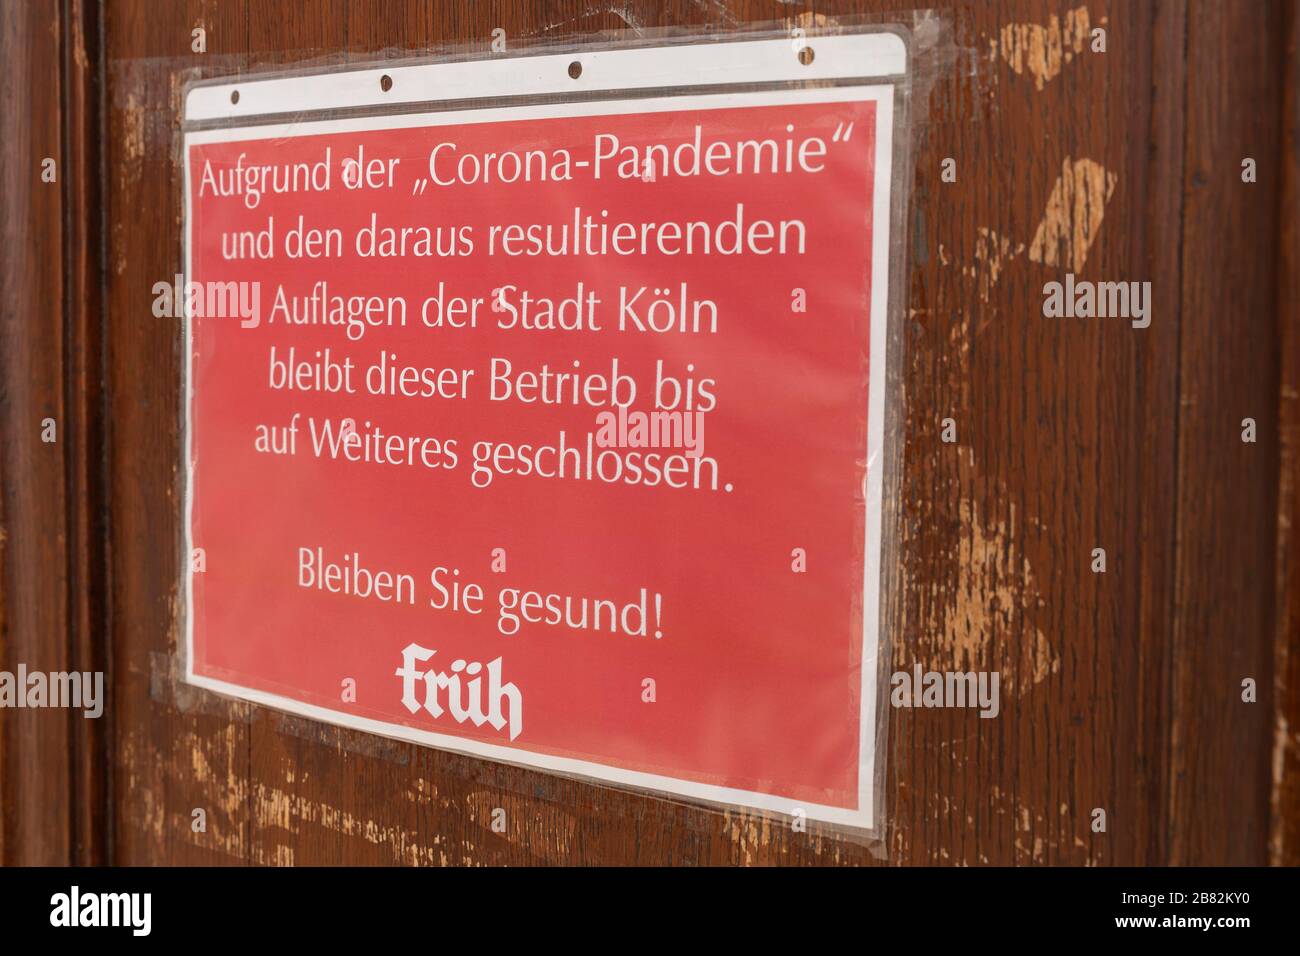 Signez dans un pub qu'il a fermé en raison de la crise de Corona et des exigences de la ville de Cologne Banque D'Images